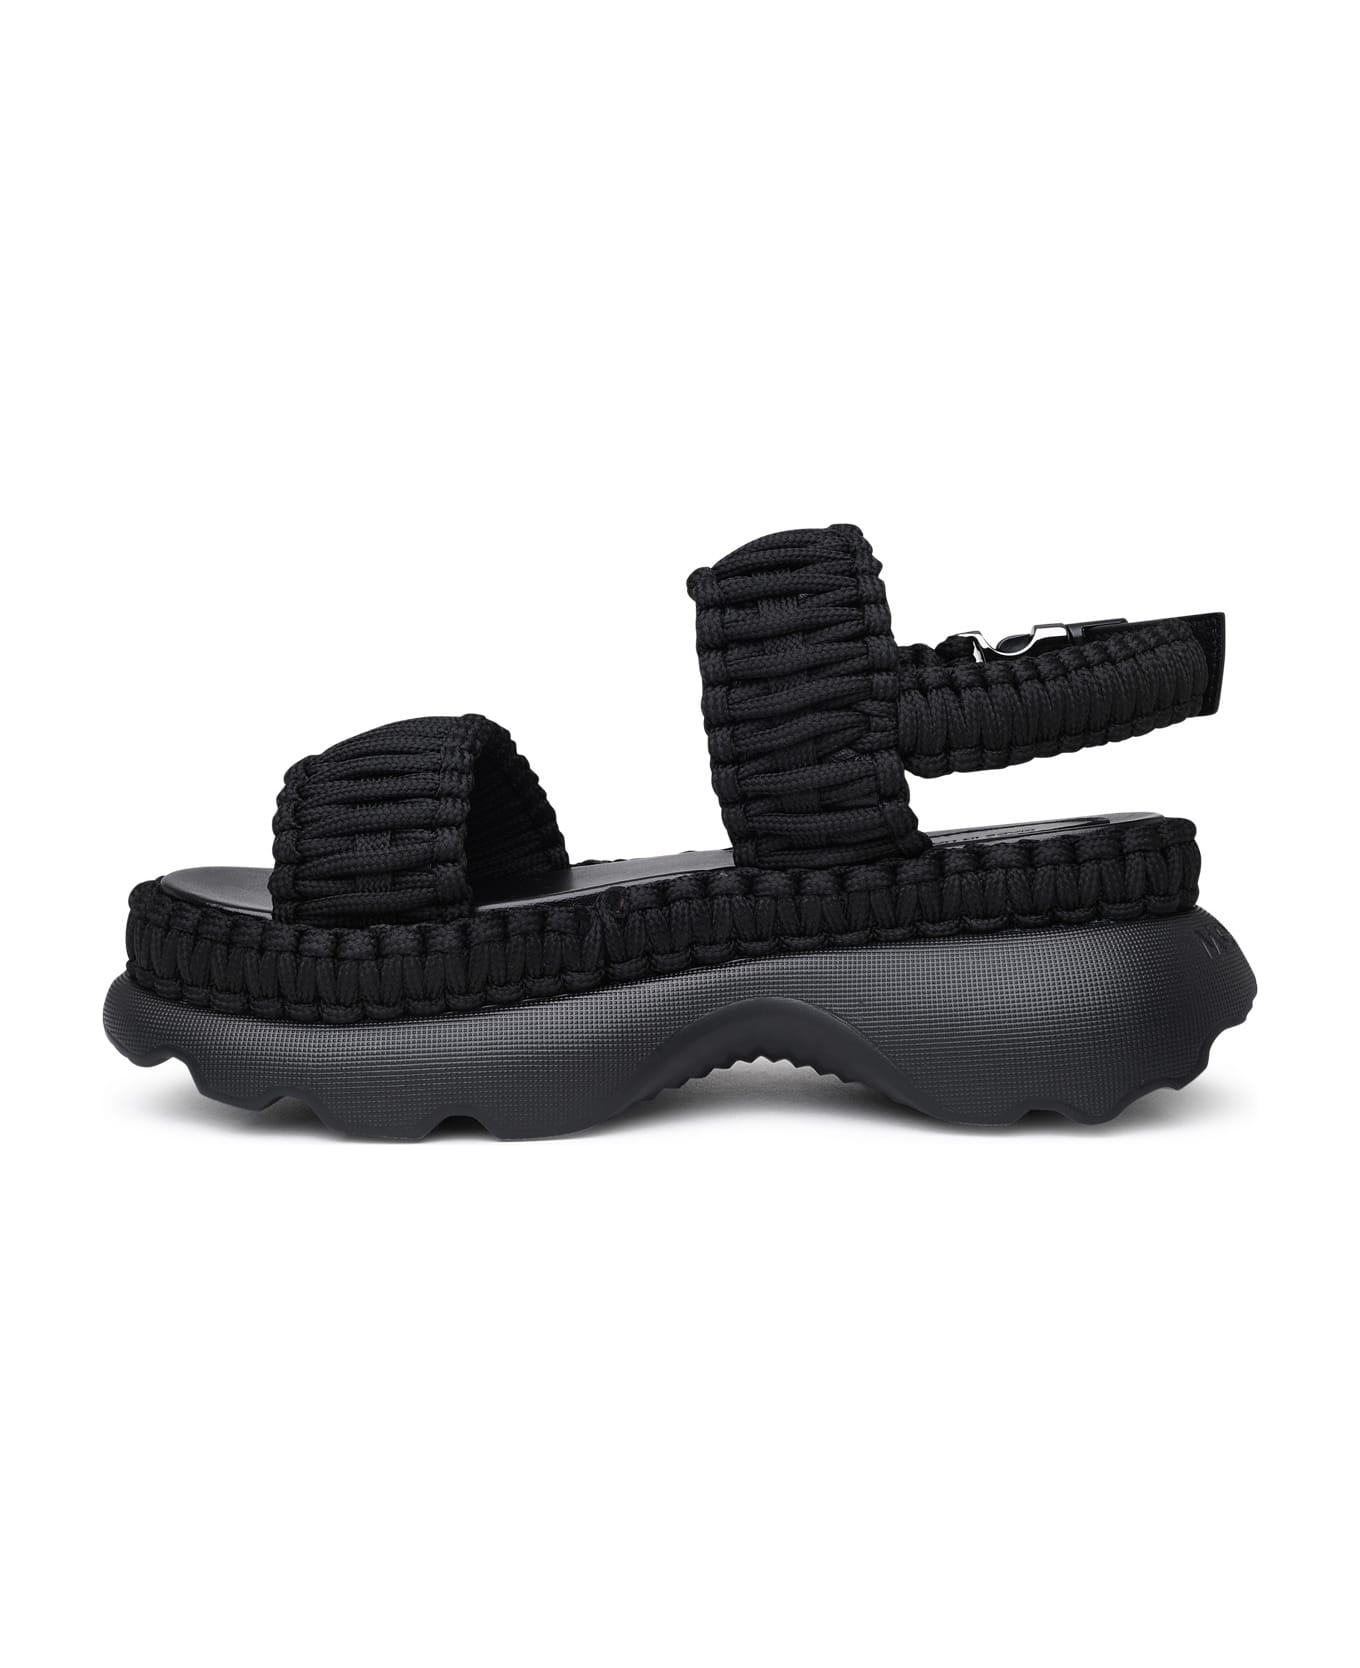 Moncler Black Polyester Beley Sandals - Black サンダル